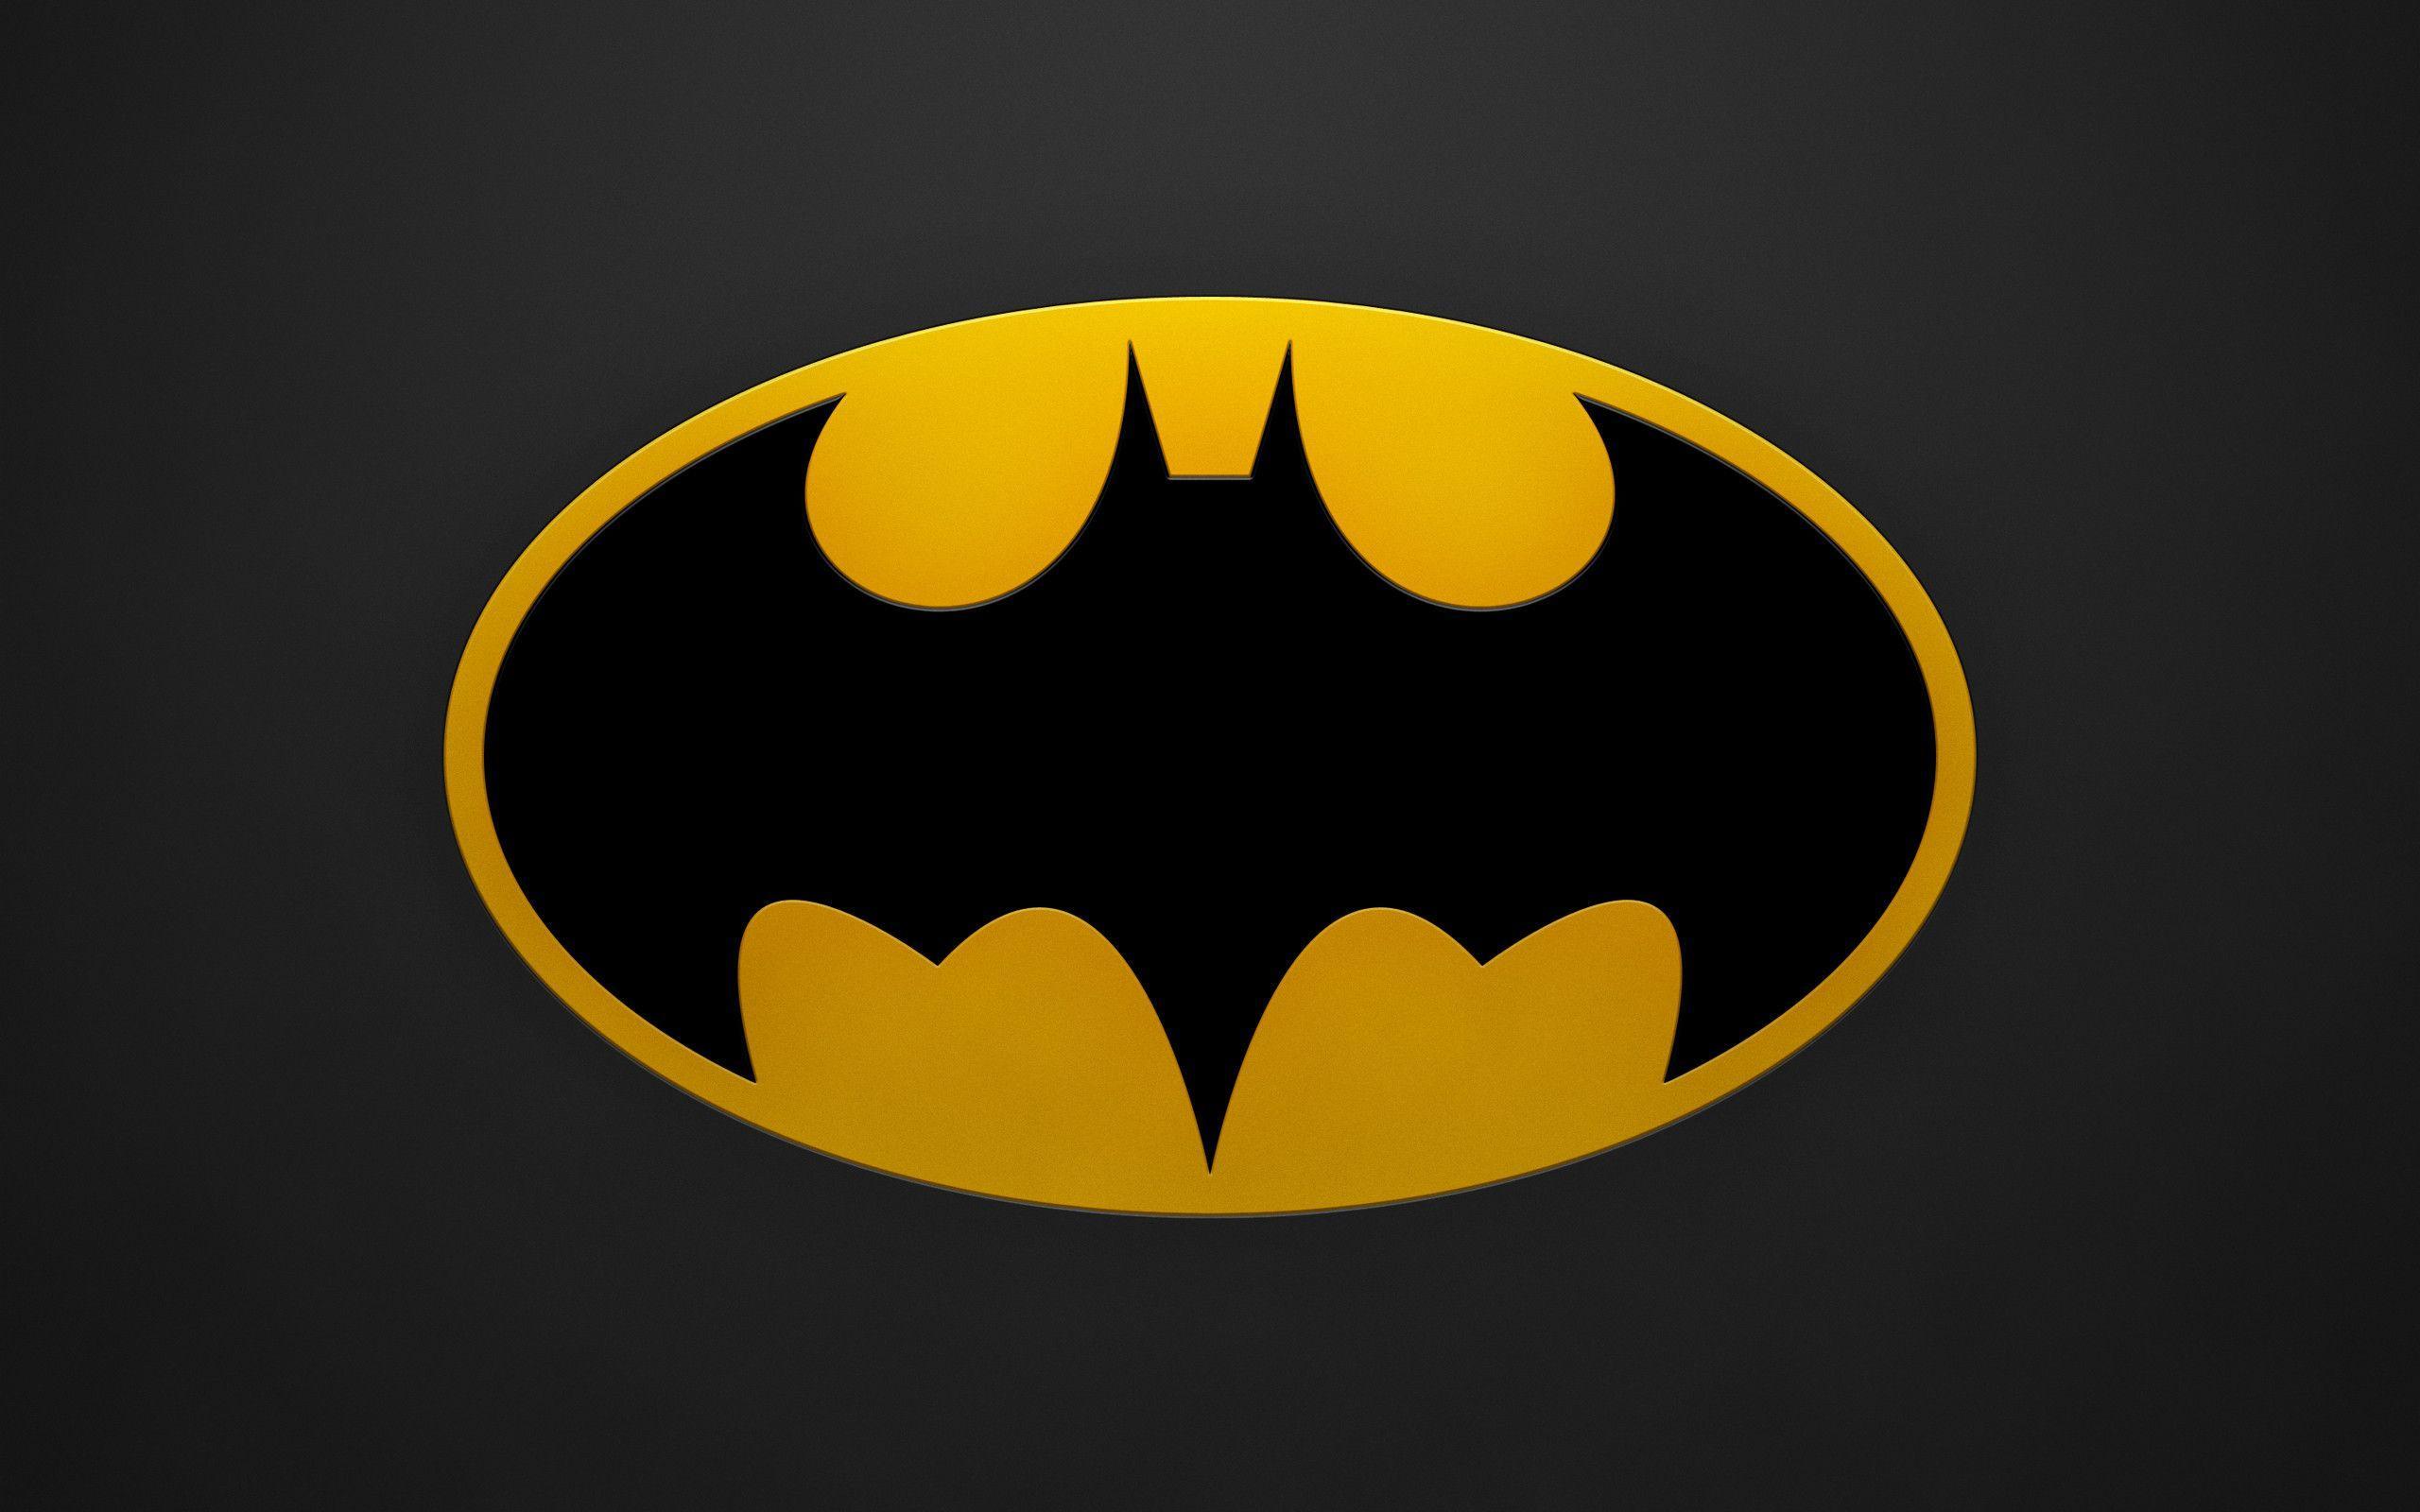 2560 x 1600 · jpeg - Batman Symbol Wallpapers - Wallpaper Cave